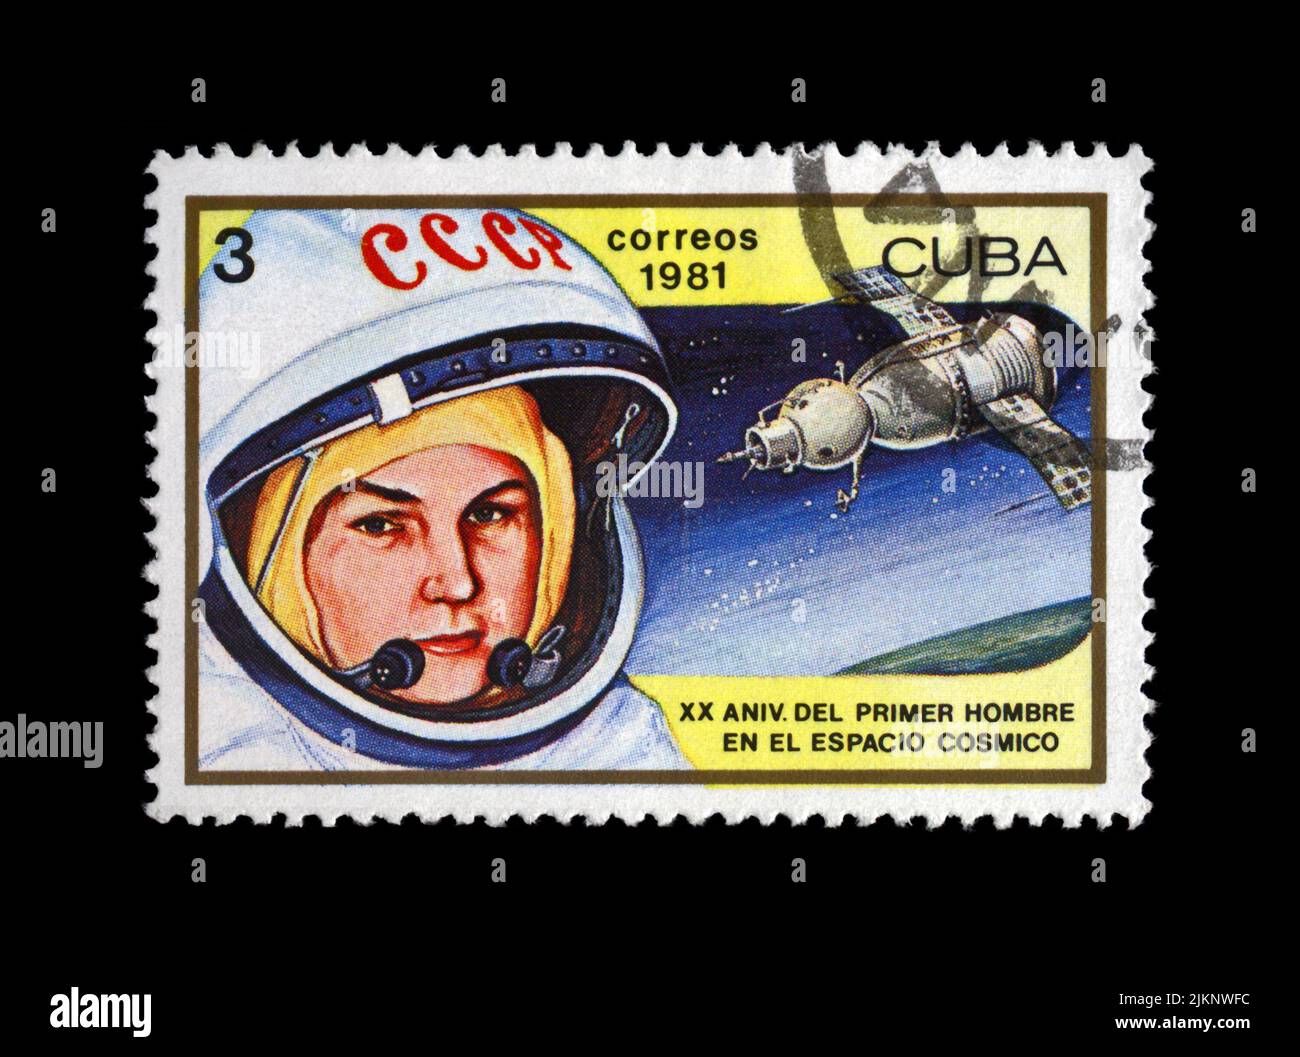 Valentina Tereshkova, astronauta , primera mujer en el espacio, lanzadera de cohetes Vostok 6, hacia 1981. Sello postal clásico aislado sobre fondo negro. Foto de stock